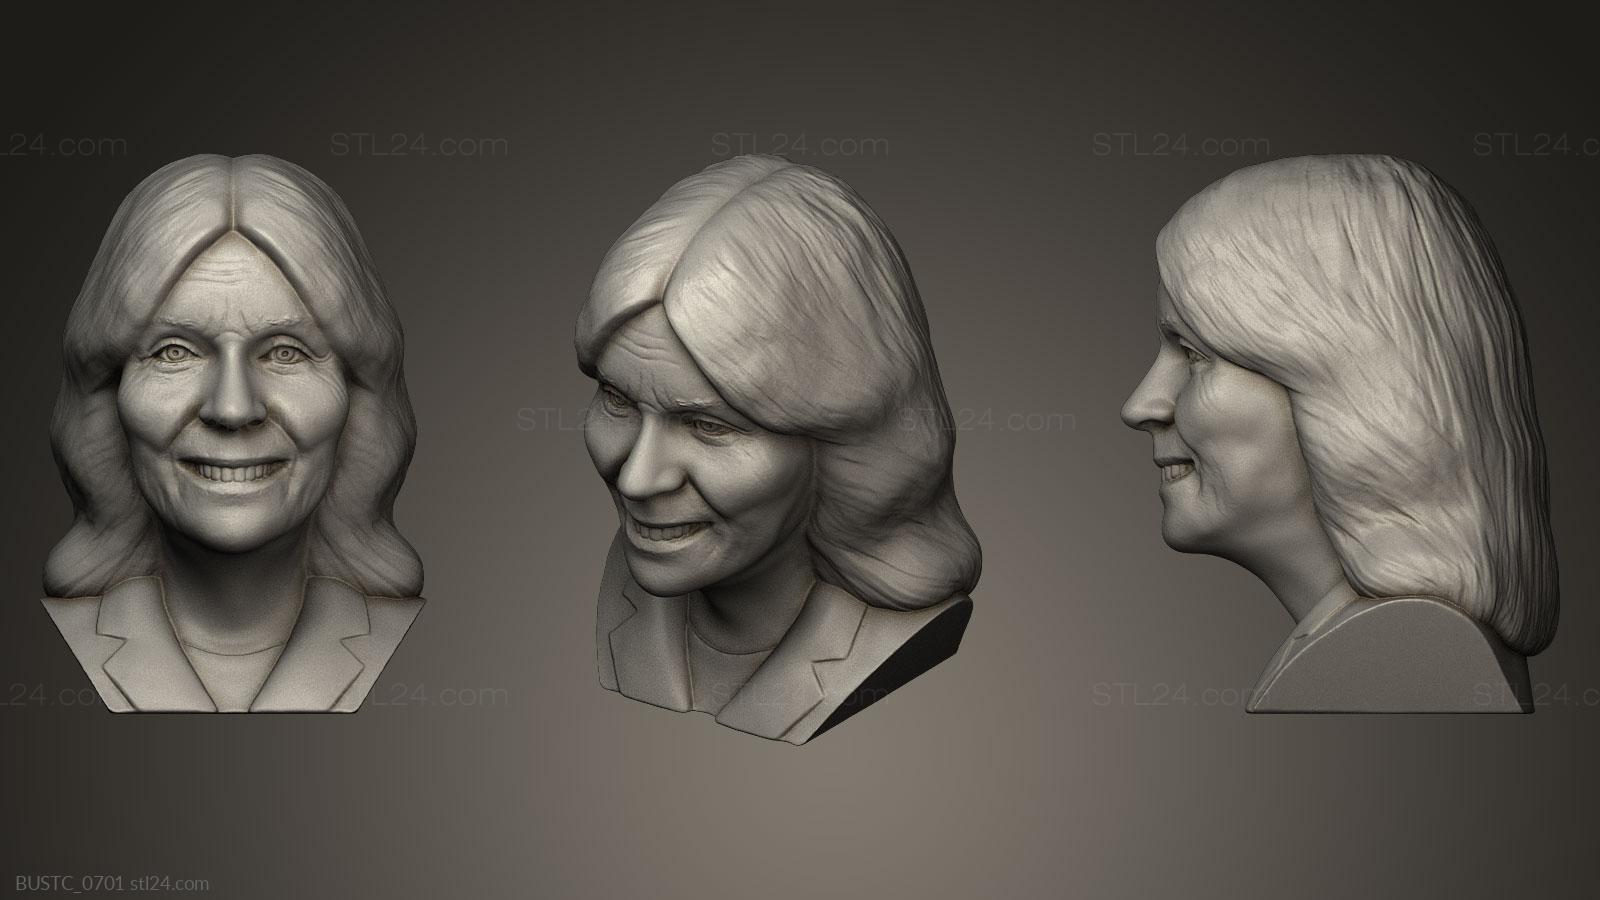 Бюсты и барельефы известных личностей (Джилл Байден, BUSTC_0701) 3D модель для ЧПУ станка